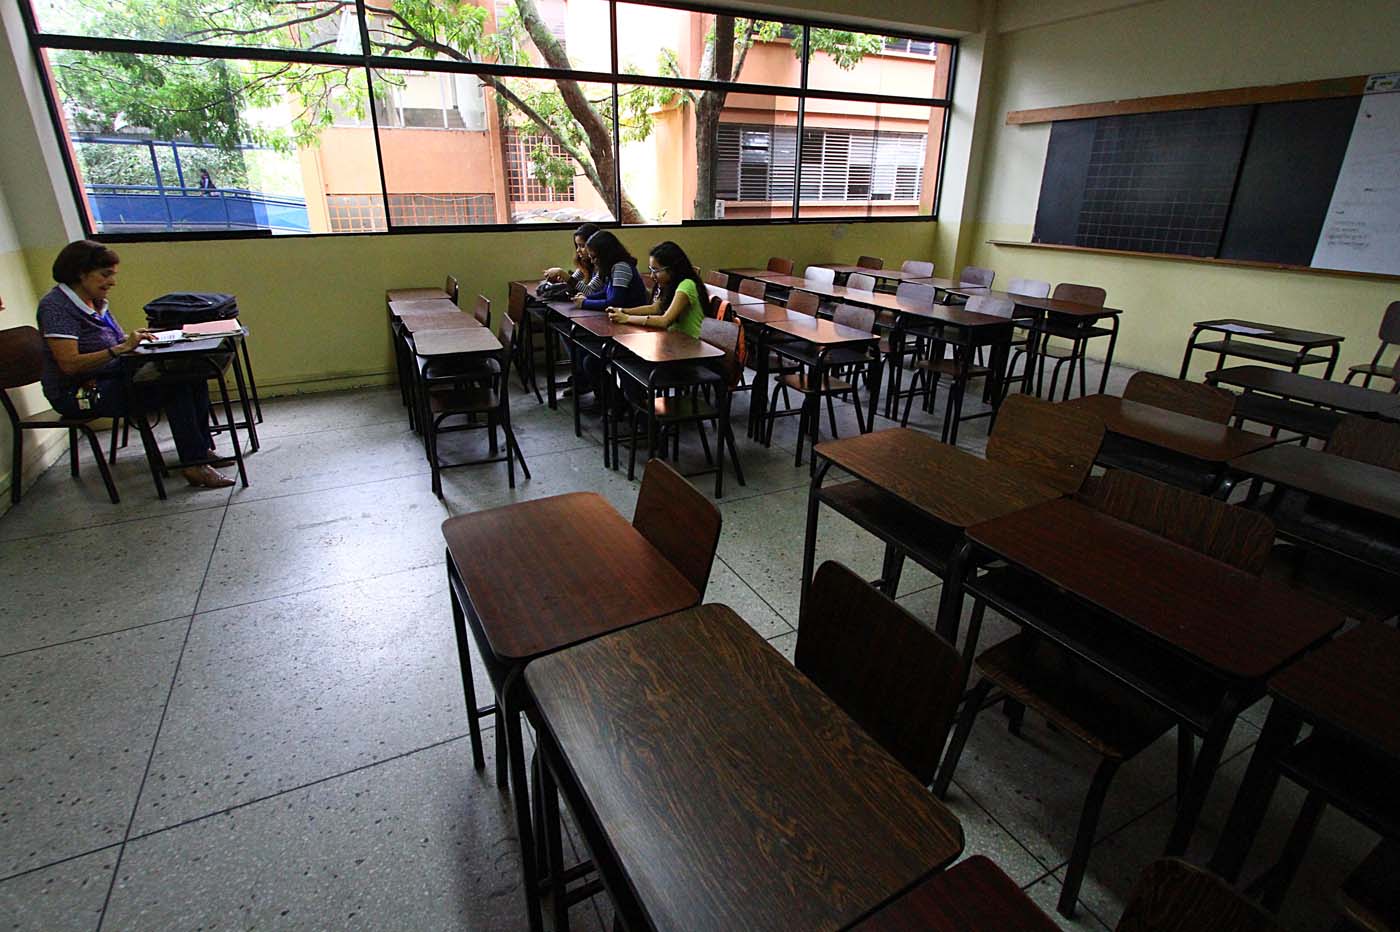 Deserción estudiantil en las universidades venezolanas oscila entre 30% y 40%